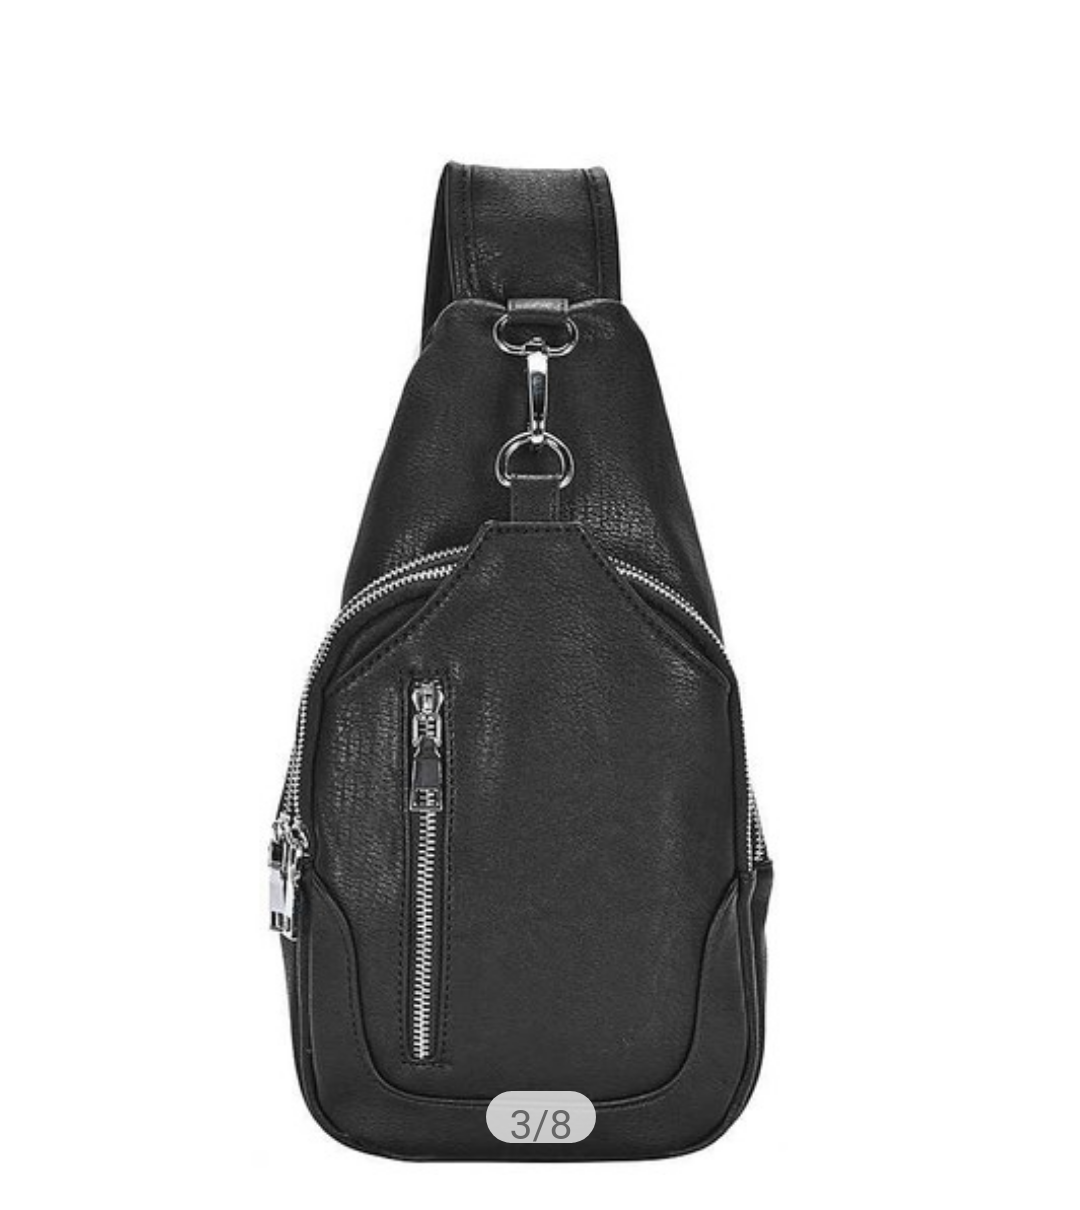 Black leather sling backpack